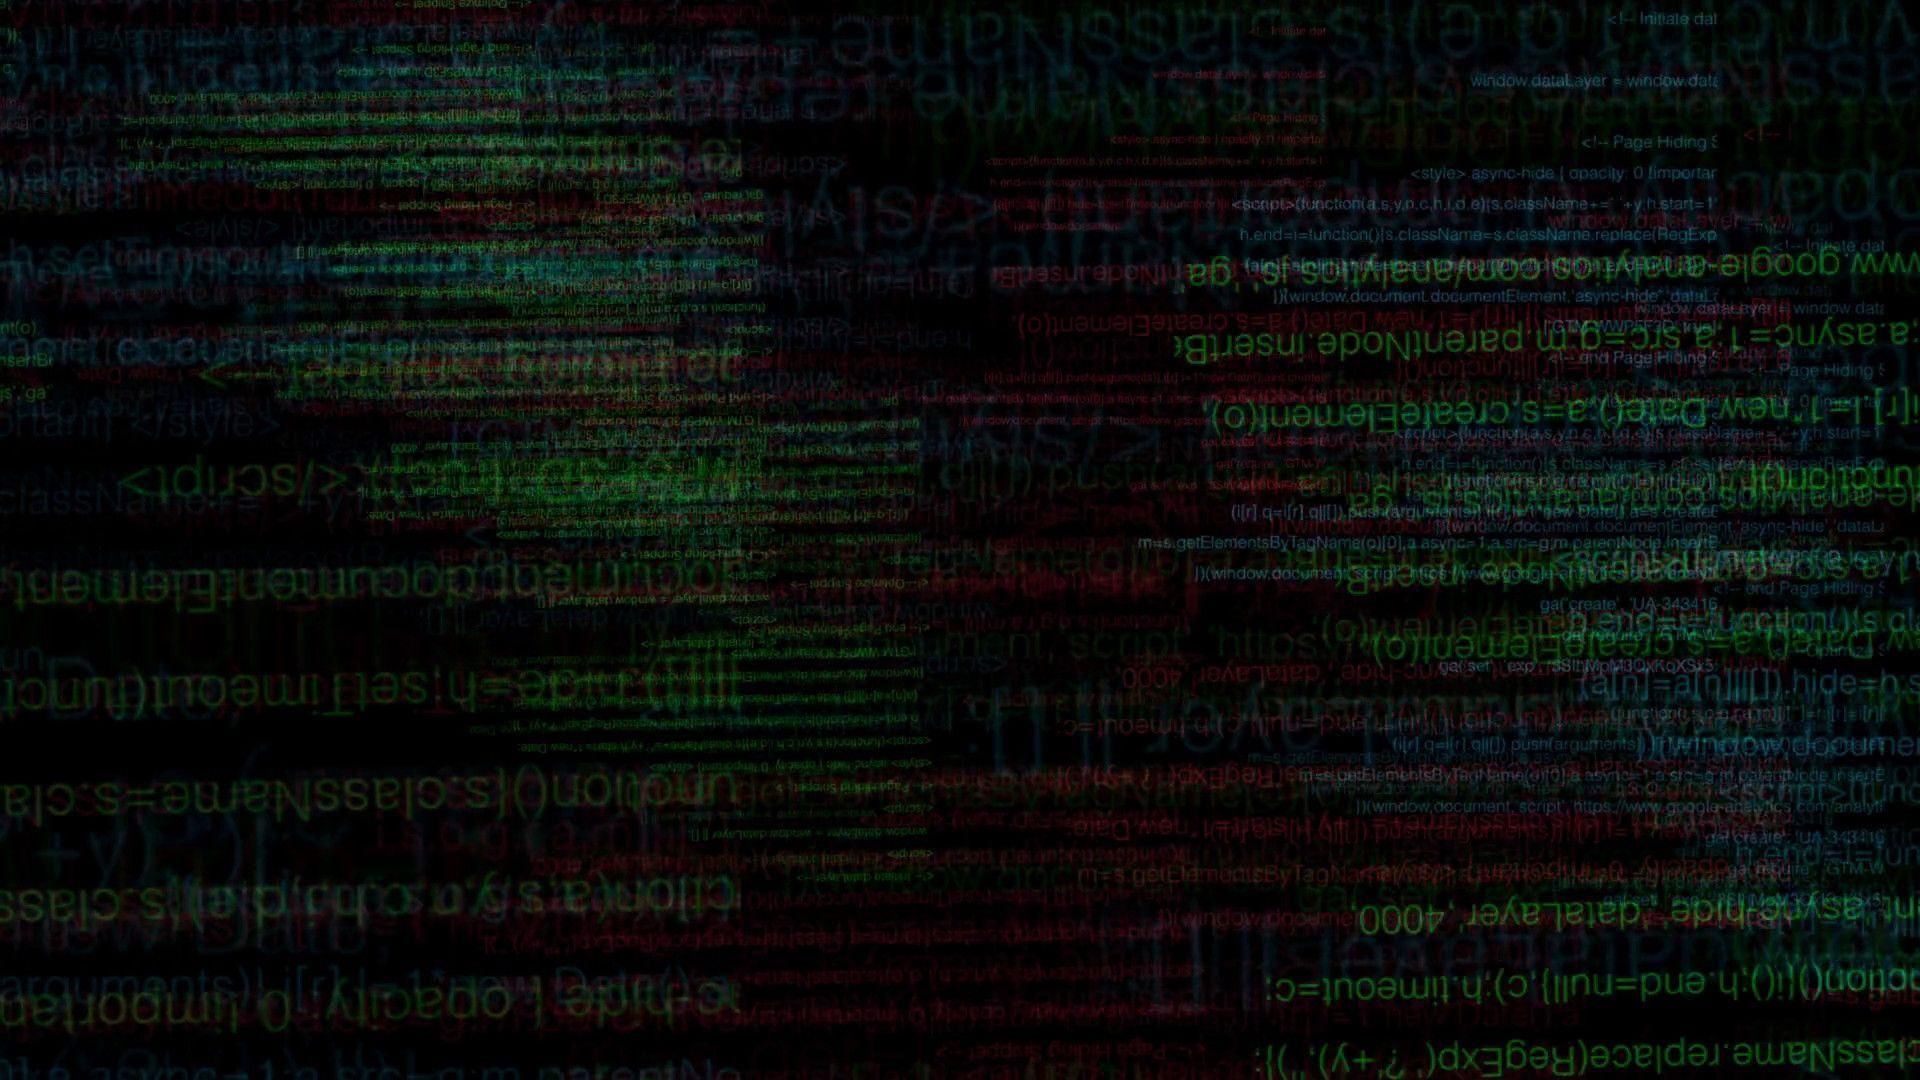 100 Hình nền ảnh Hacker chất full HD cho máy tính điện thoại